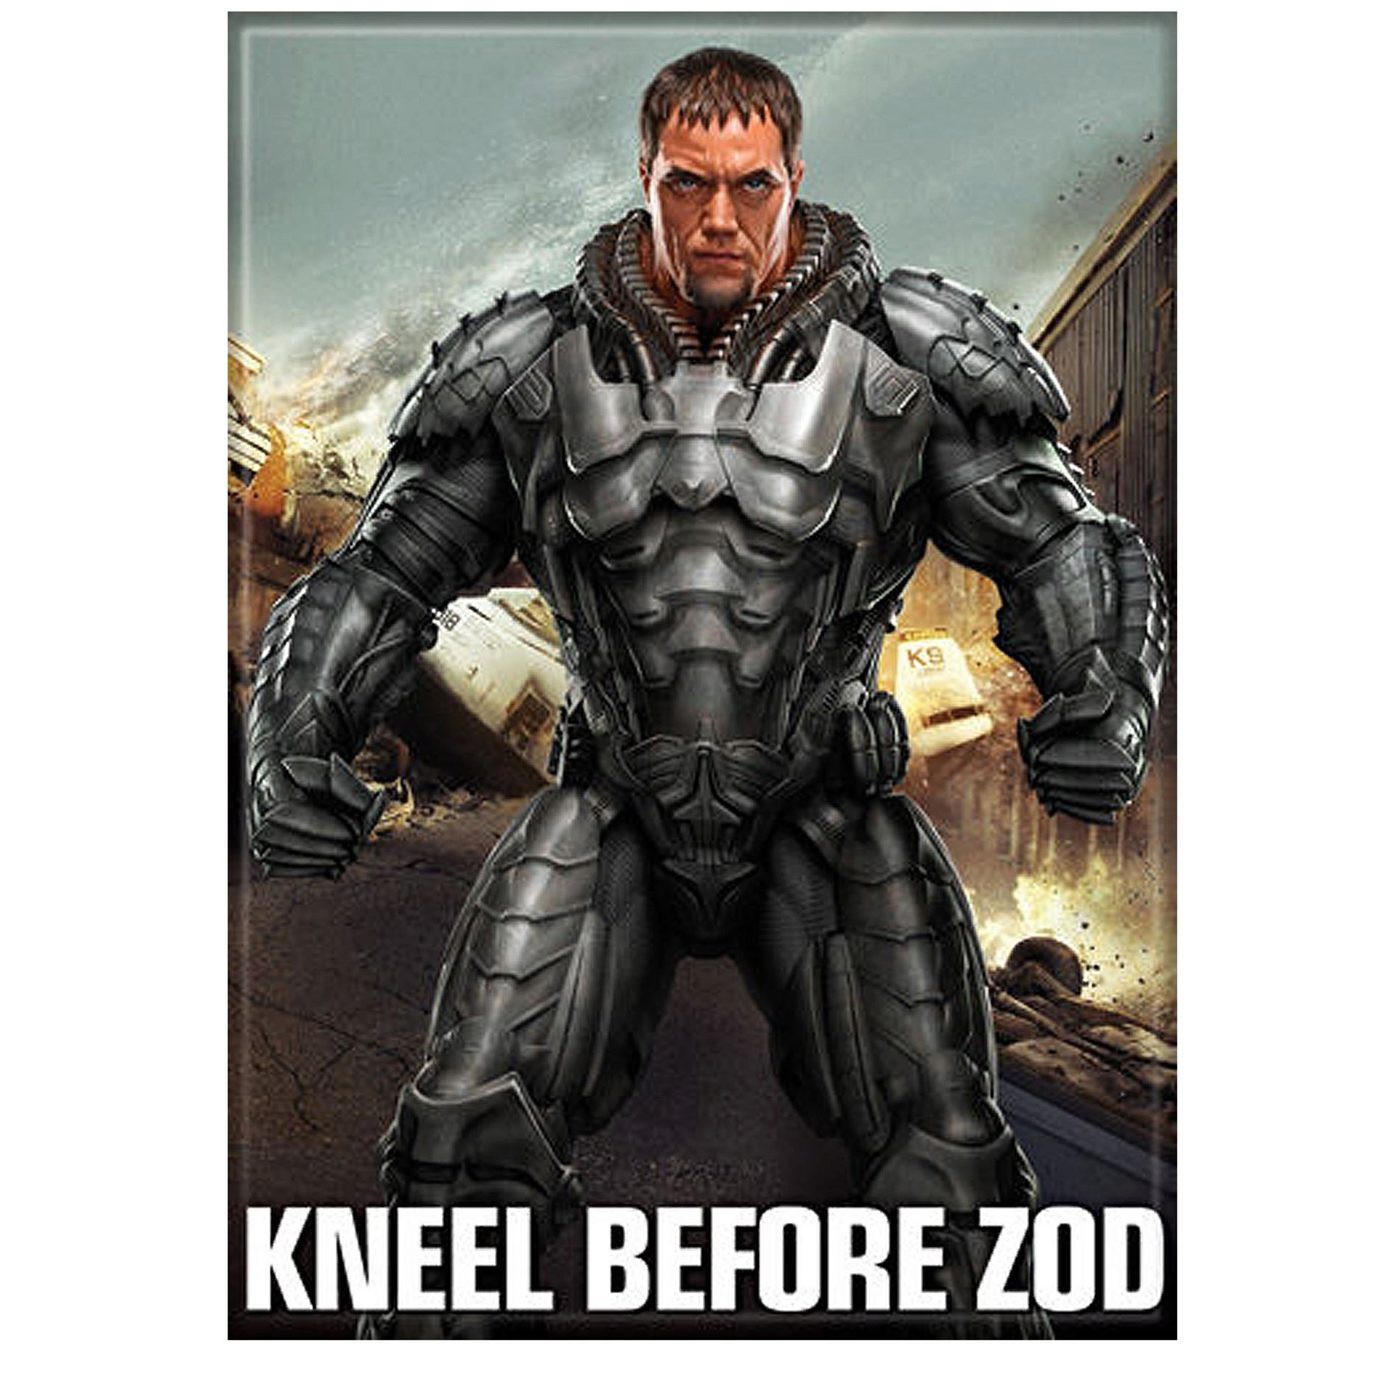 Superman Man of Steel Kneel Before Zod Image Magnet